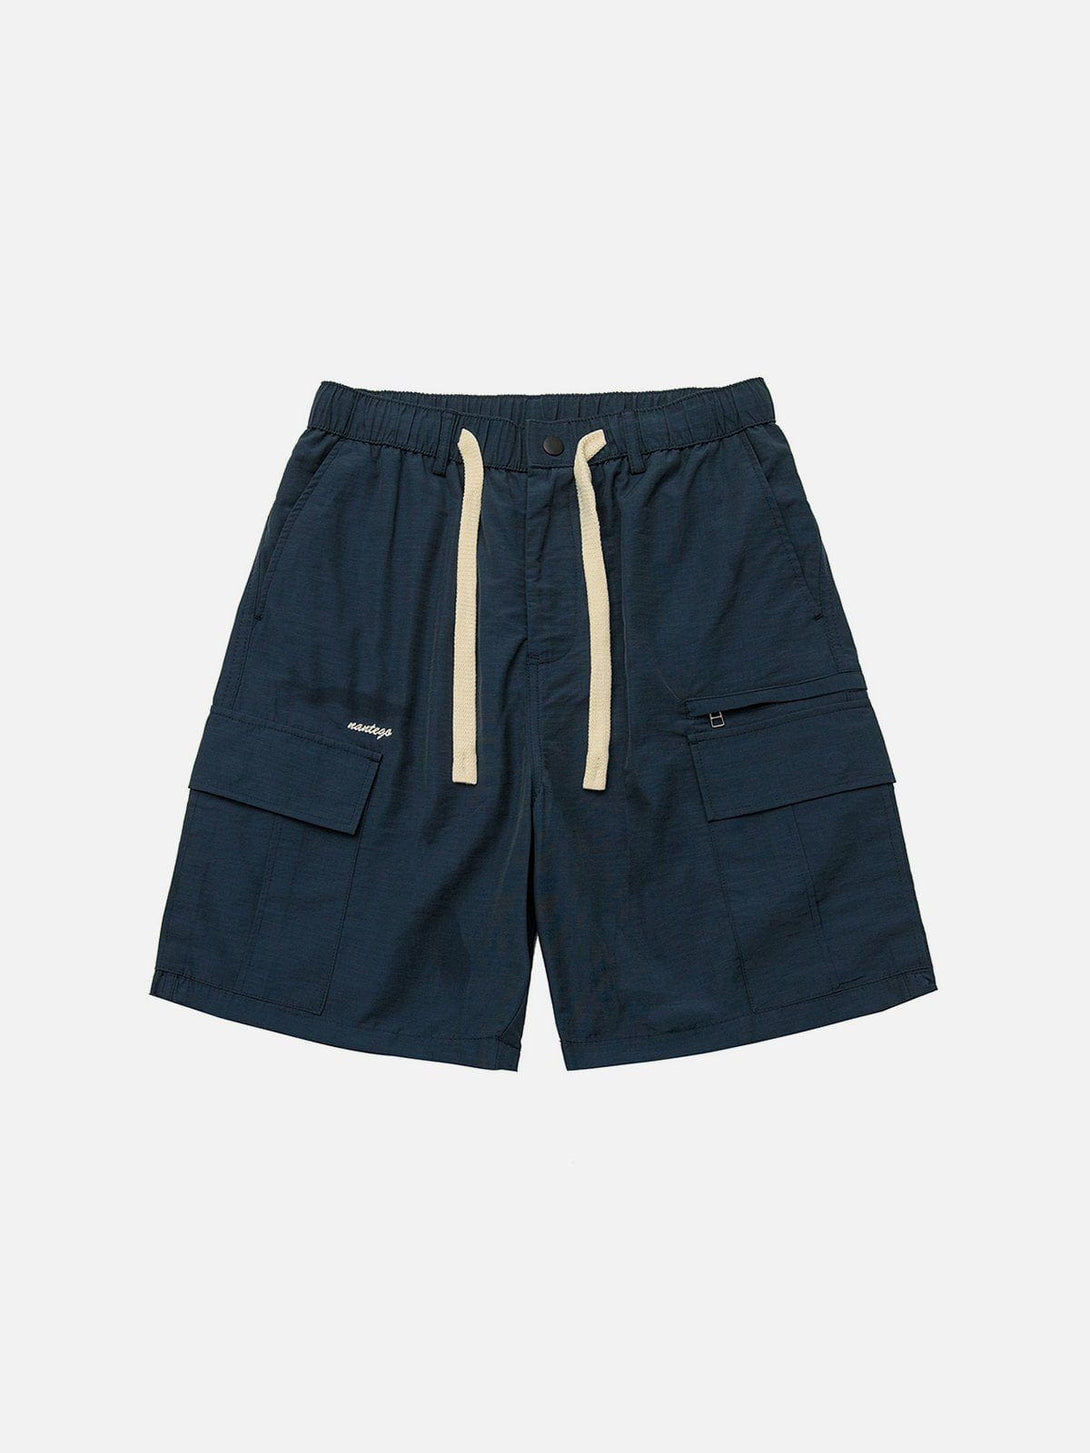 Levefly - Large Pocket Shorts - Streetwear Fashion - levefly.com